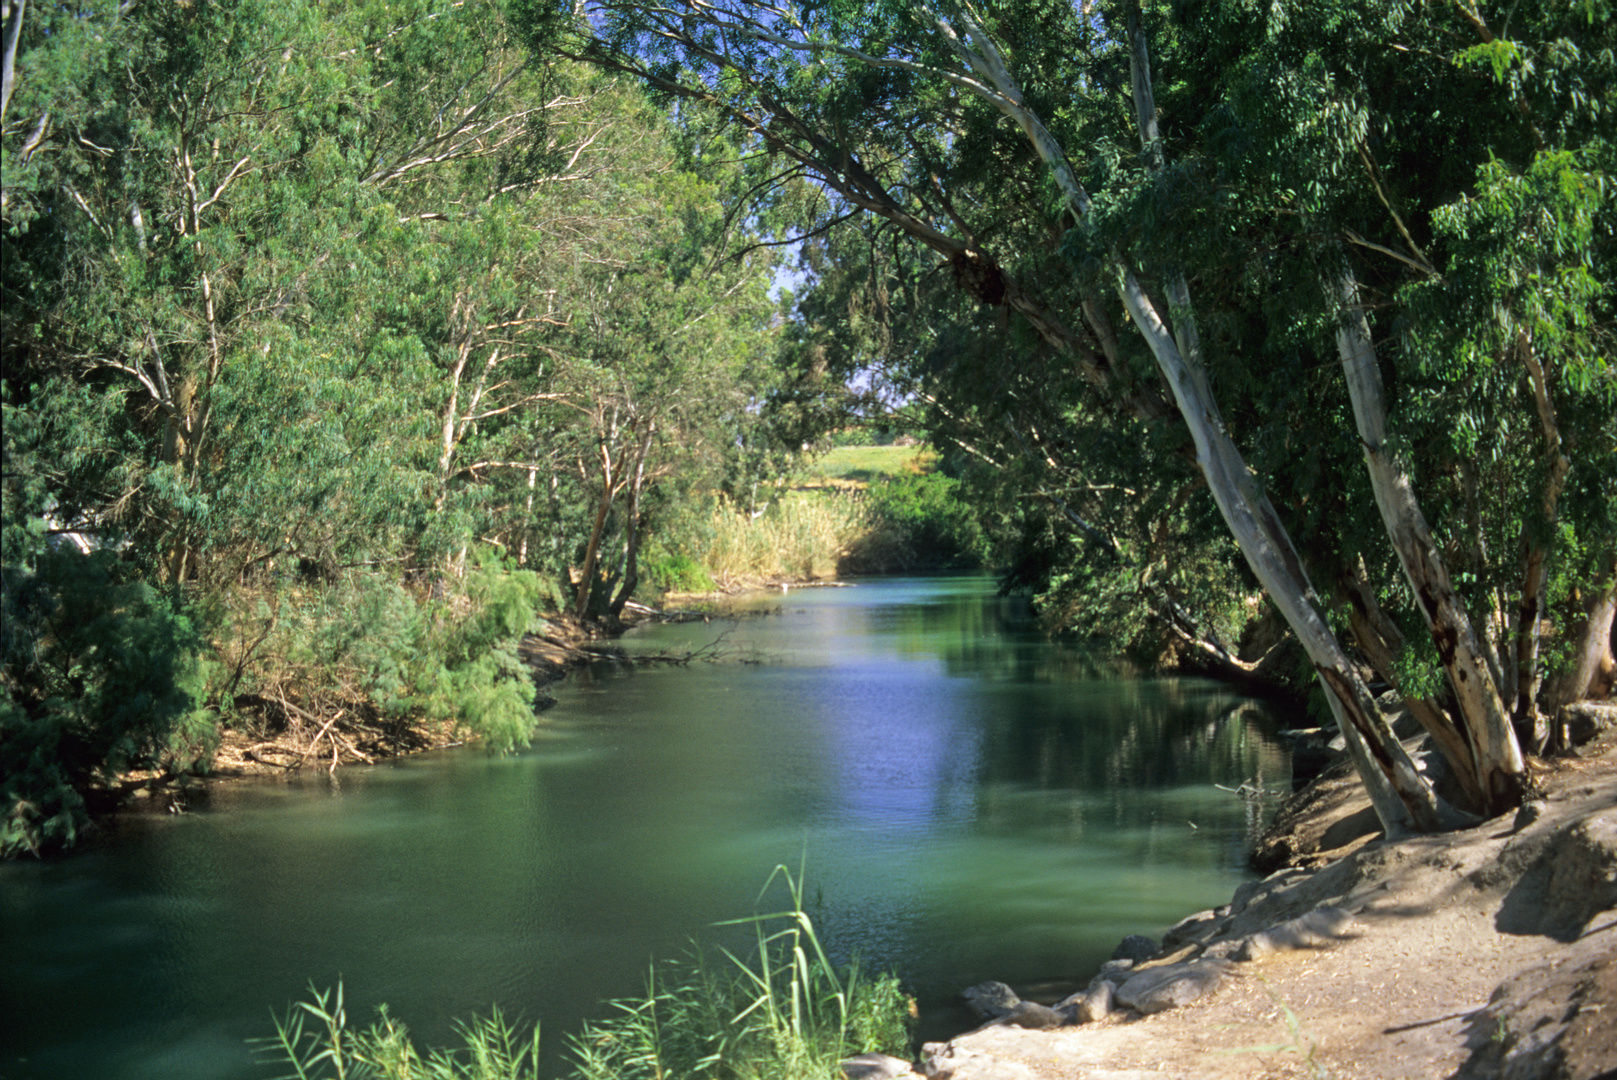 Jordan River, Israel